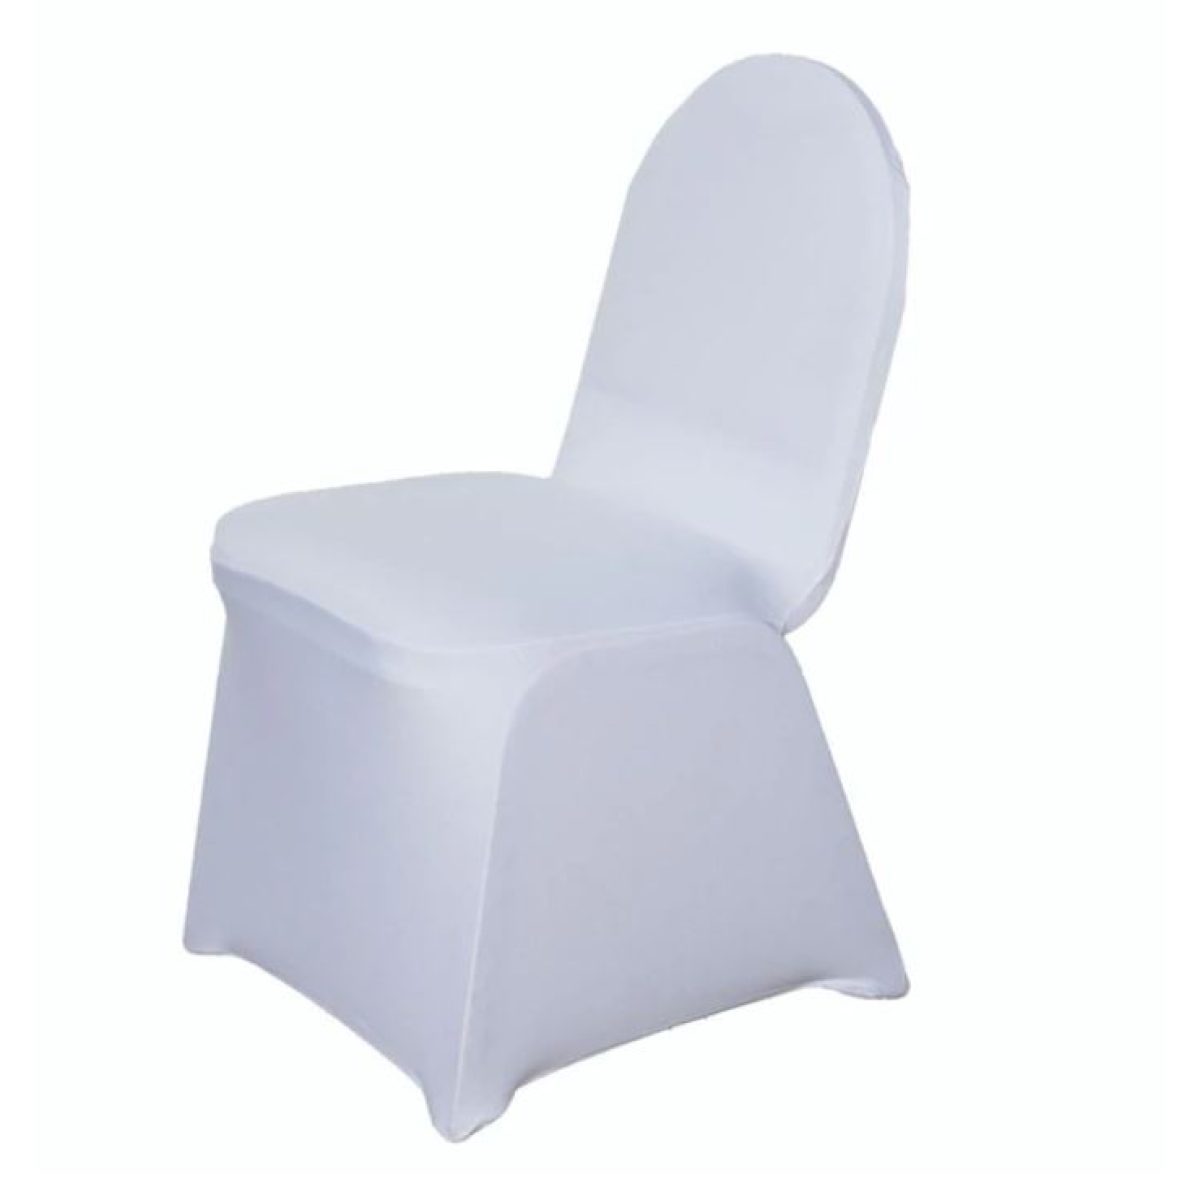 Chair Cover – Banquet Spandex